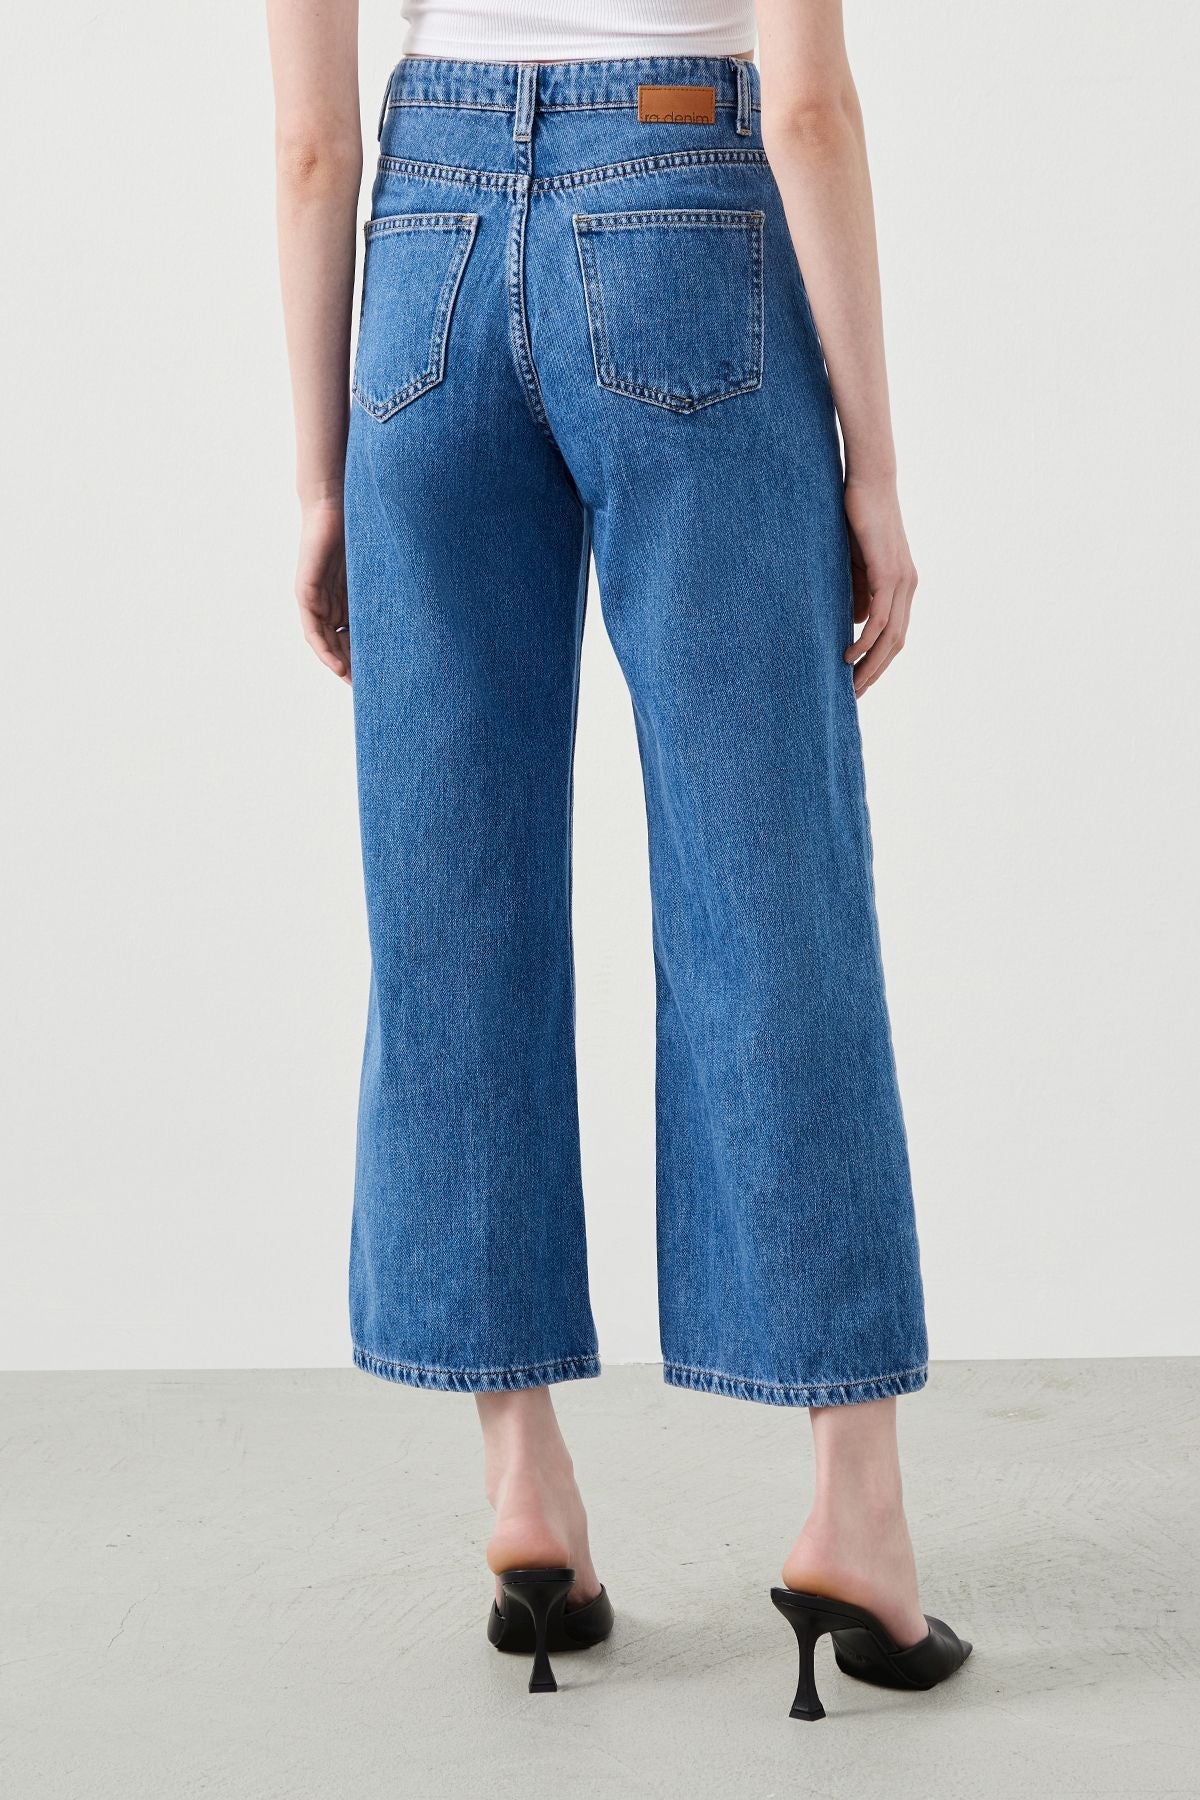 Rodos Culotte Fit Women's Blue Jeans